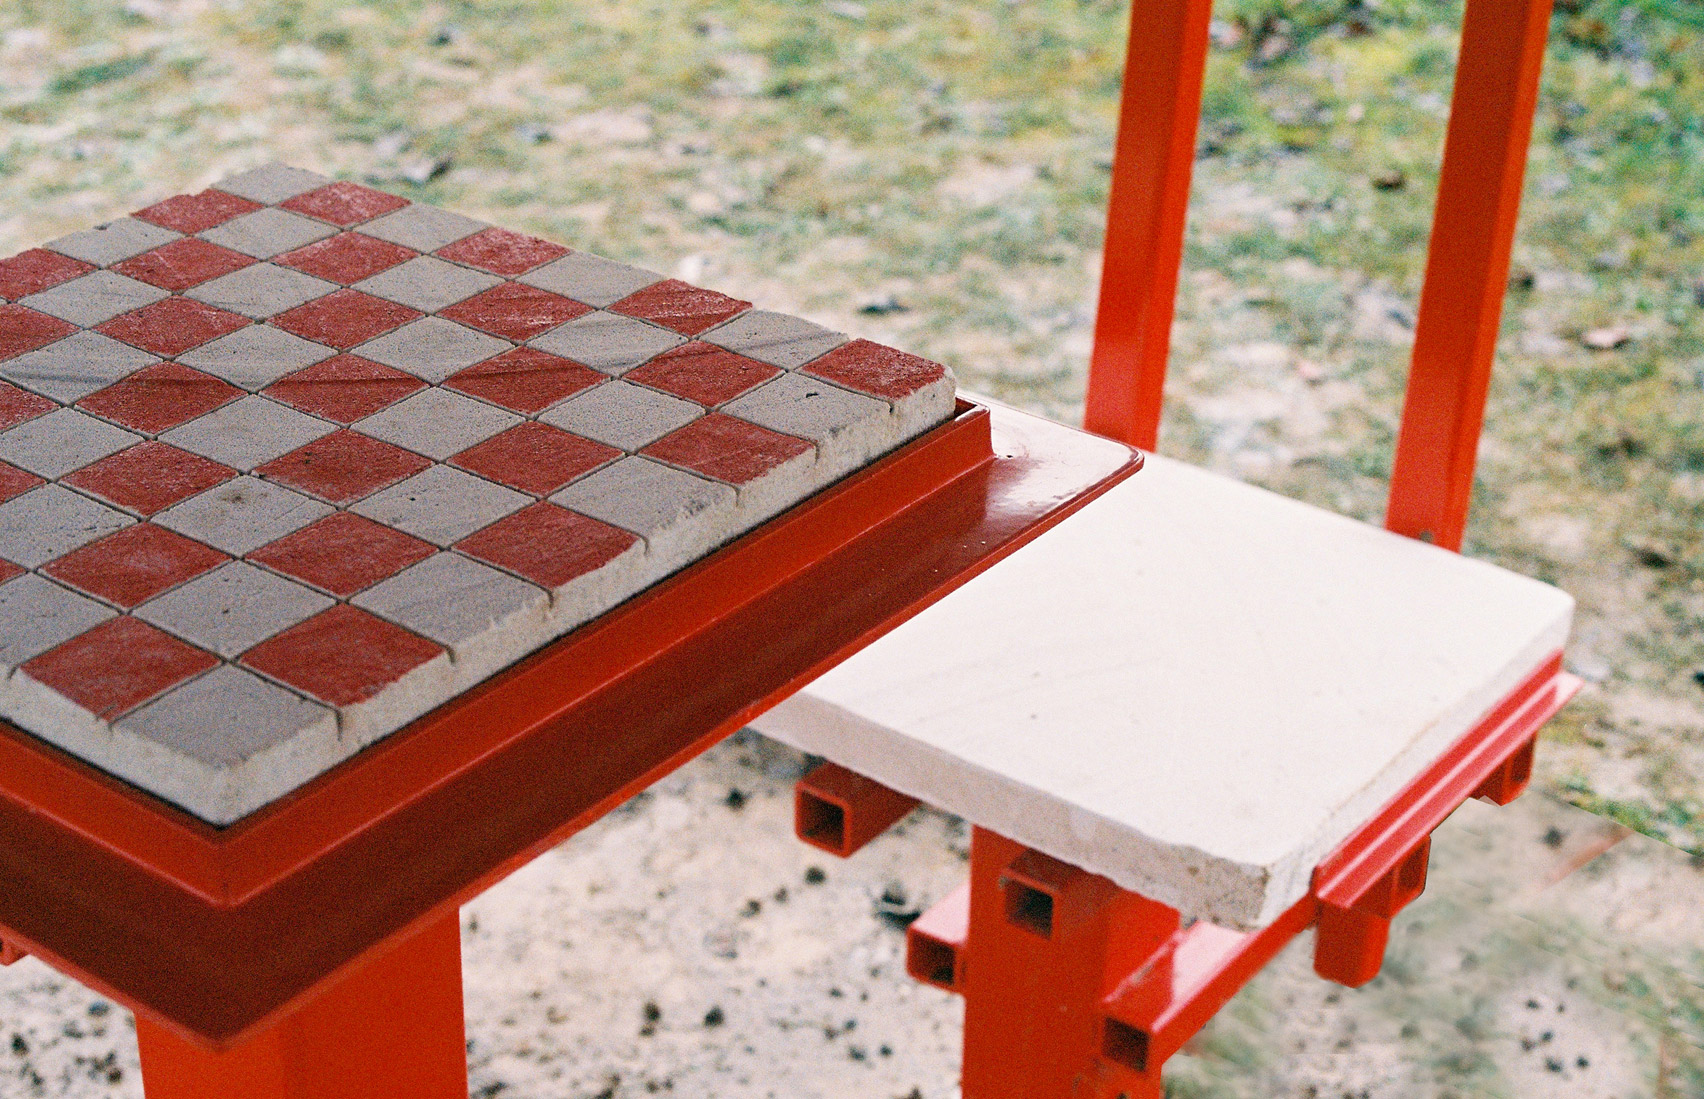 A stone chess board 